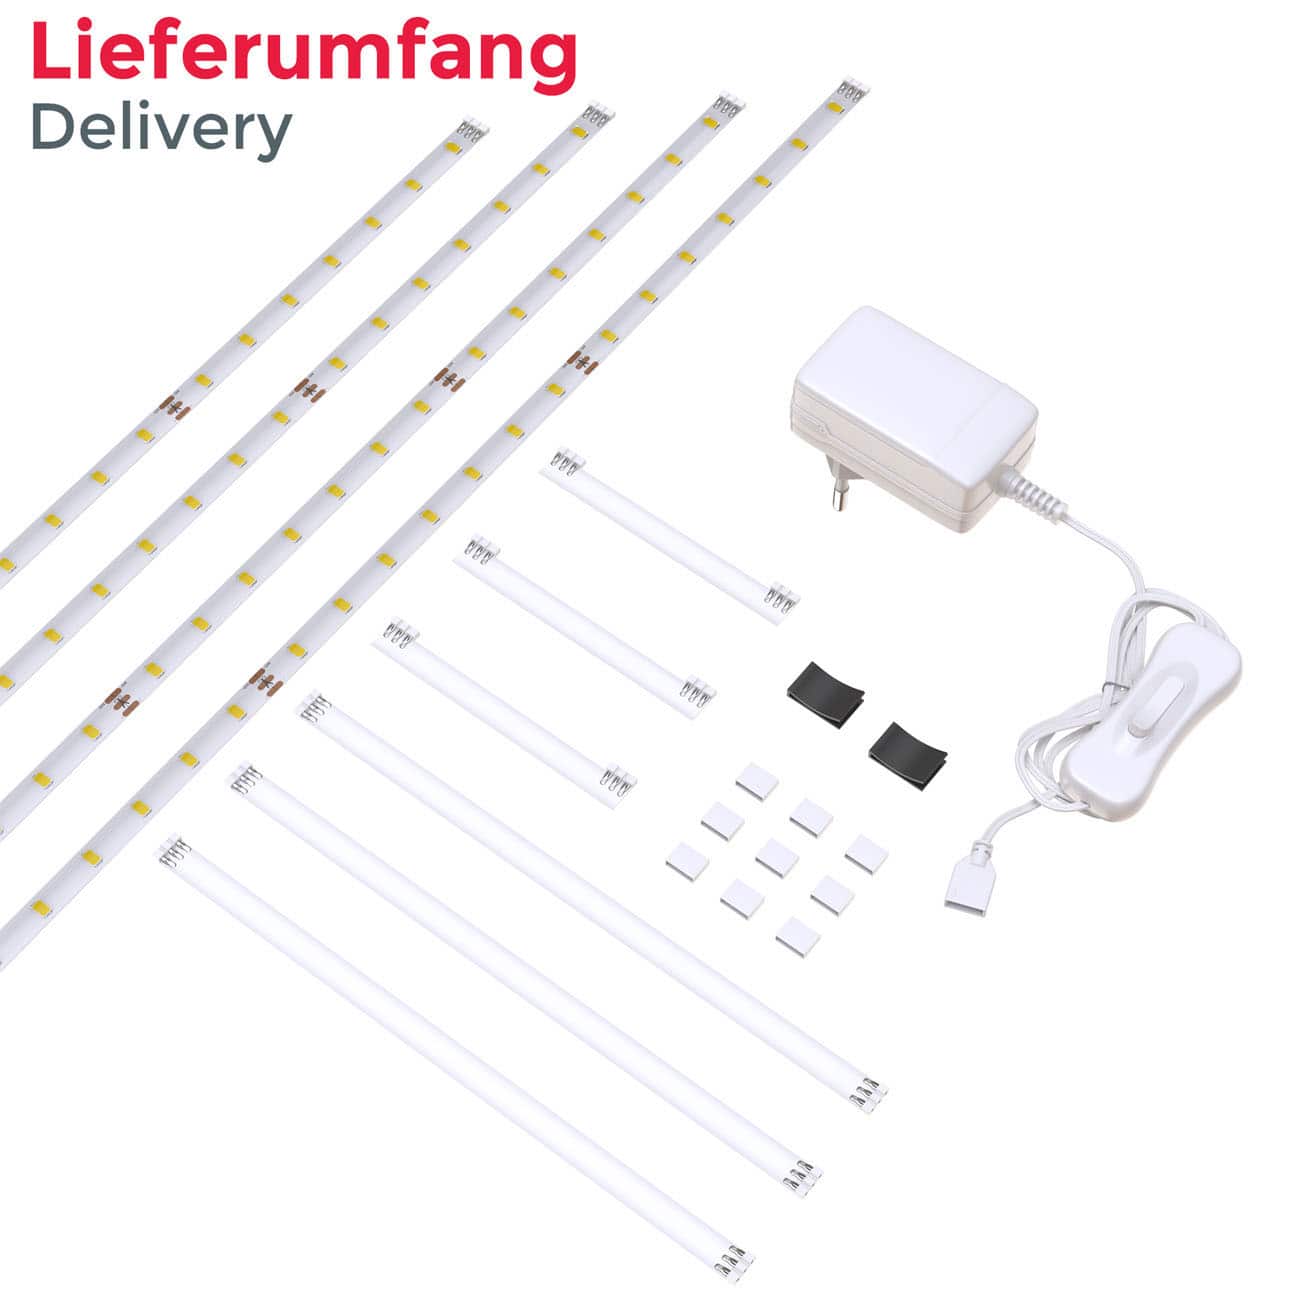 LED Lichtband weiß 2m | 4 Streifen - 7